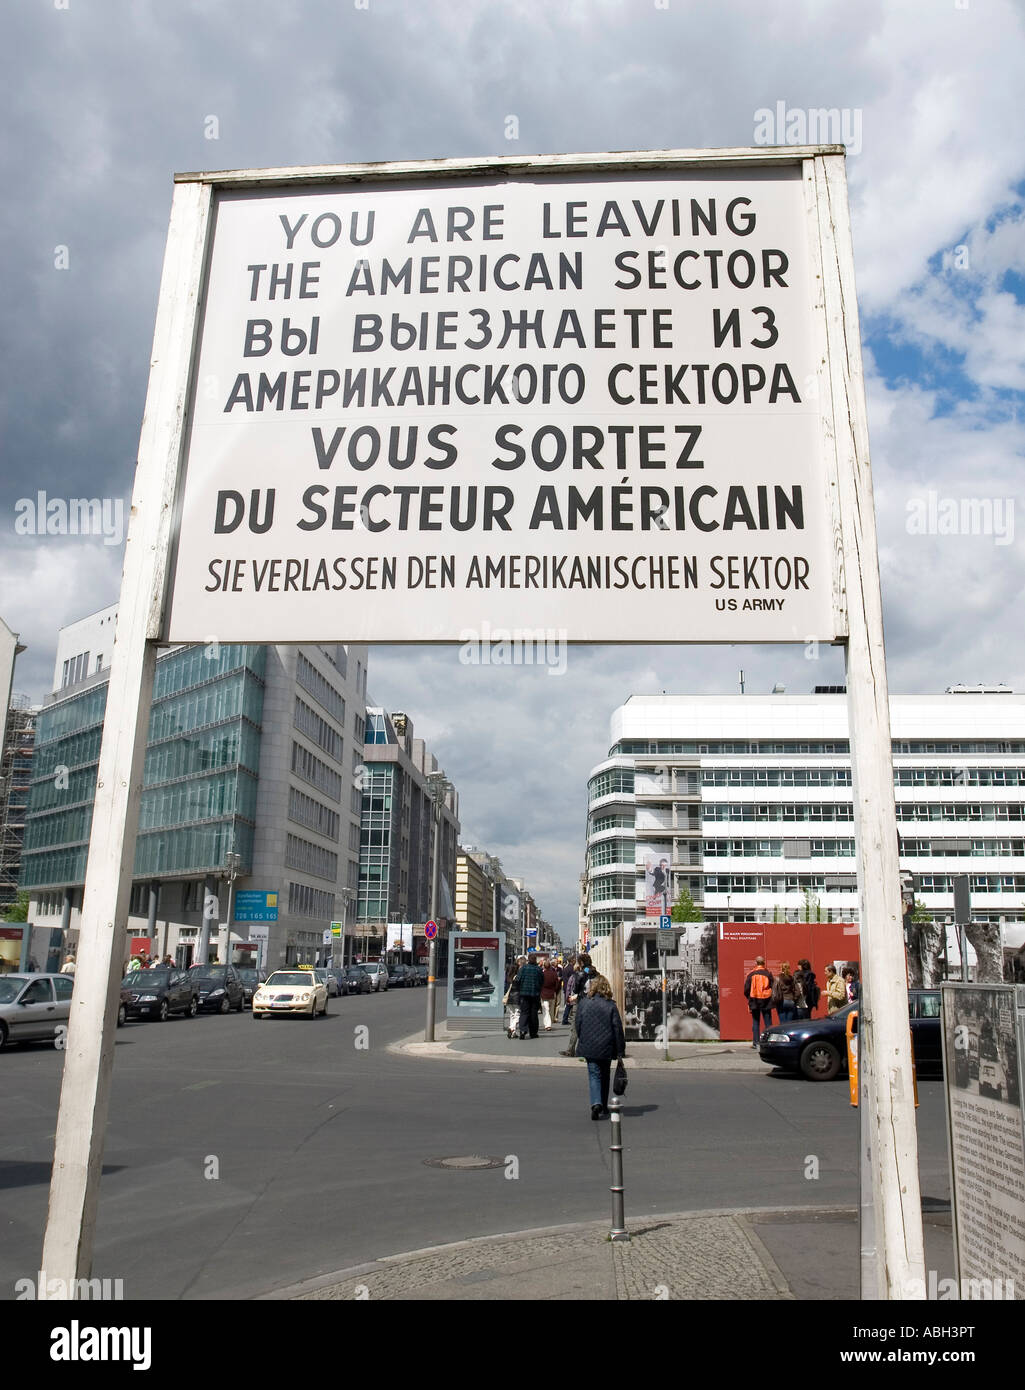 Panneau routier - Vous quittez le secteur américain - dans le célèbre ancien Checkpoint Charlie Berlin Allemagne Banque D'Images